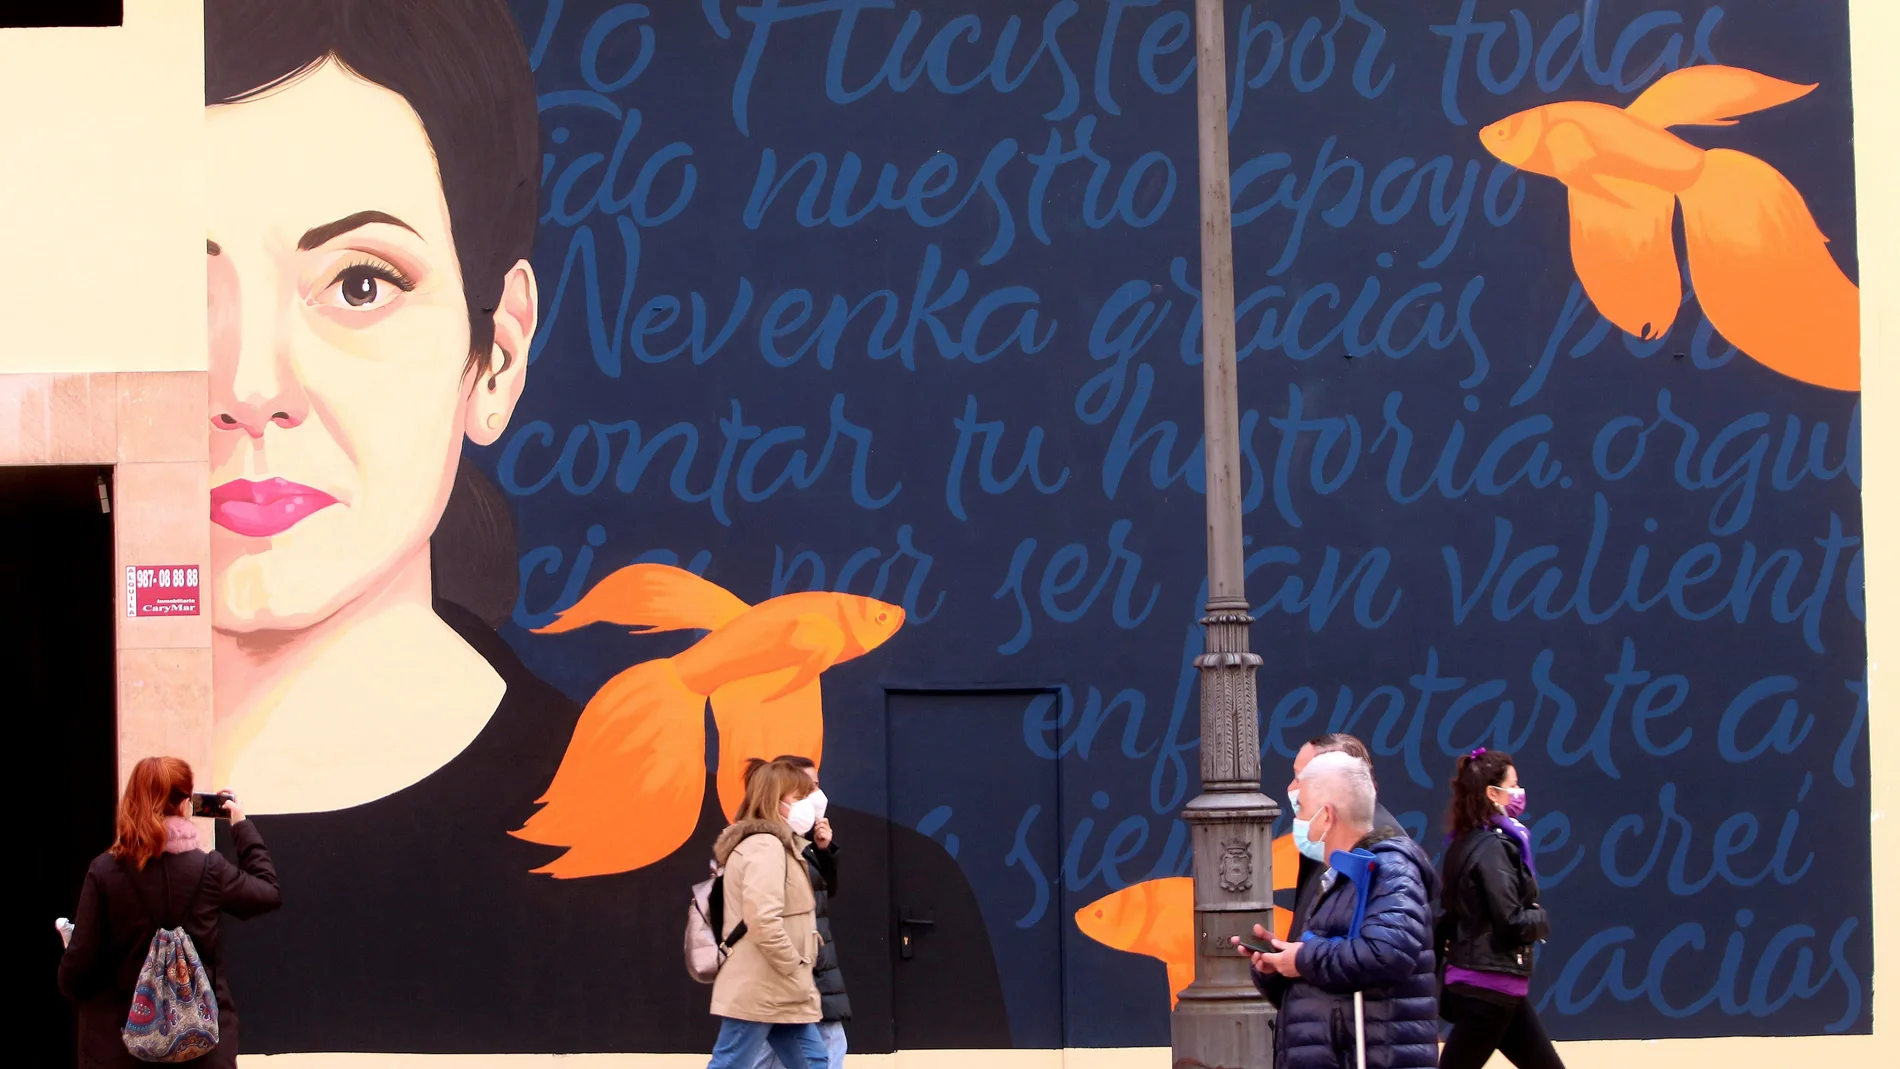 Un grafiti del que es autora Mercedes Debellard recuerda en Ponferrada (León) a Nevenka Fernández como símbolo de la lucha contra el acoso sexual, en una imagen de archivo.